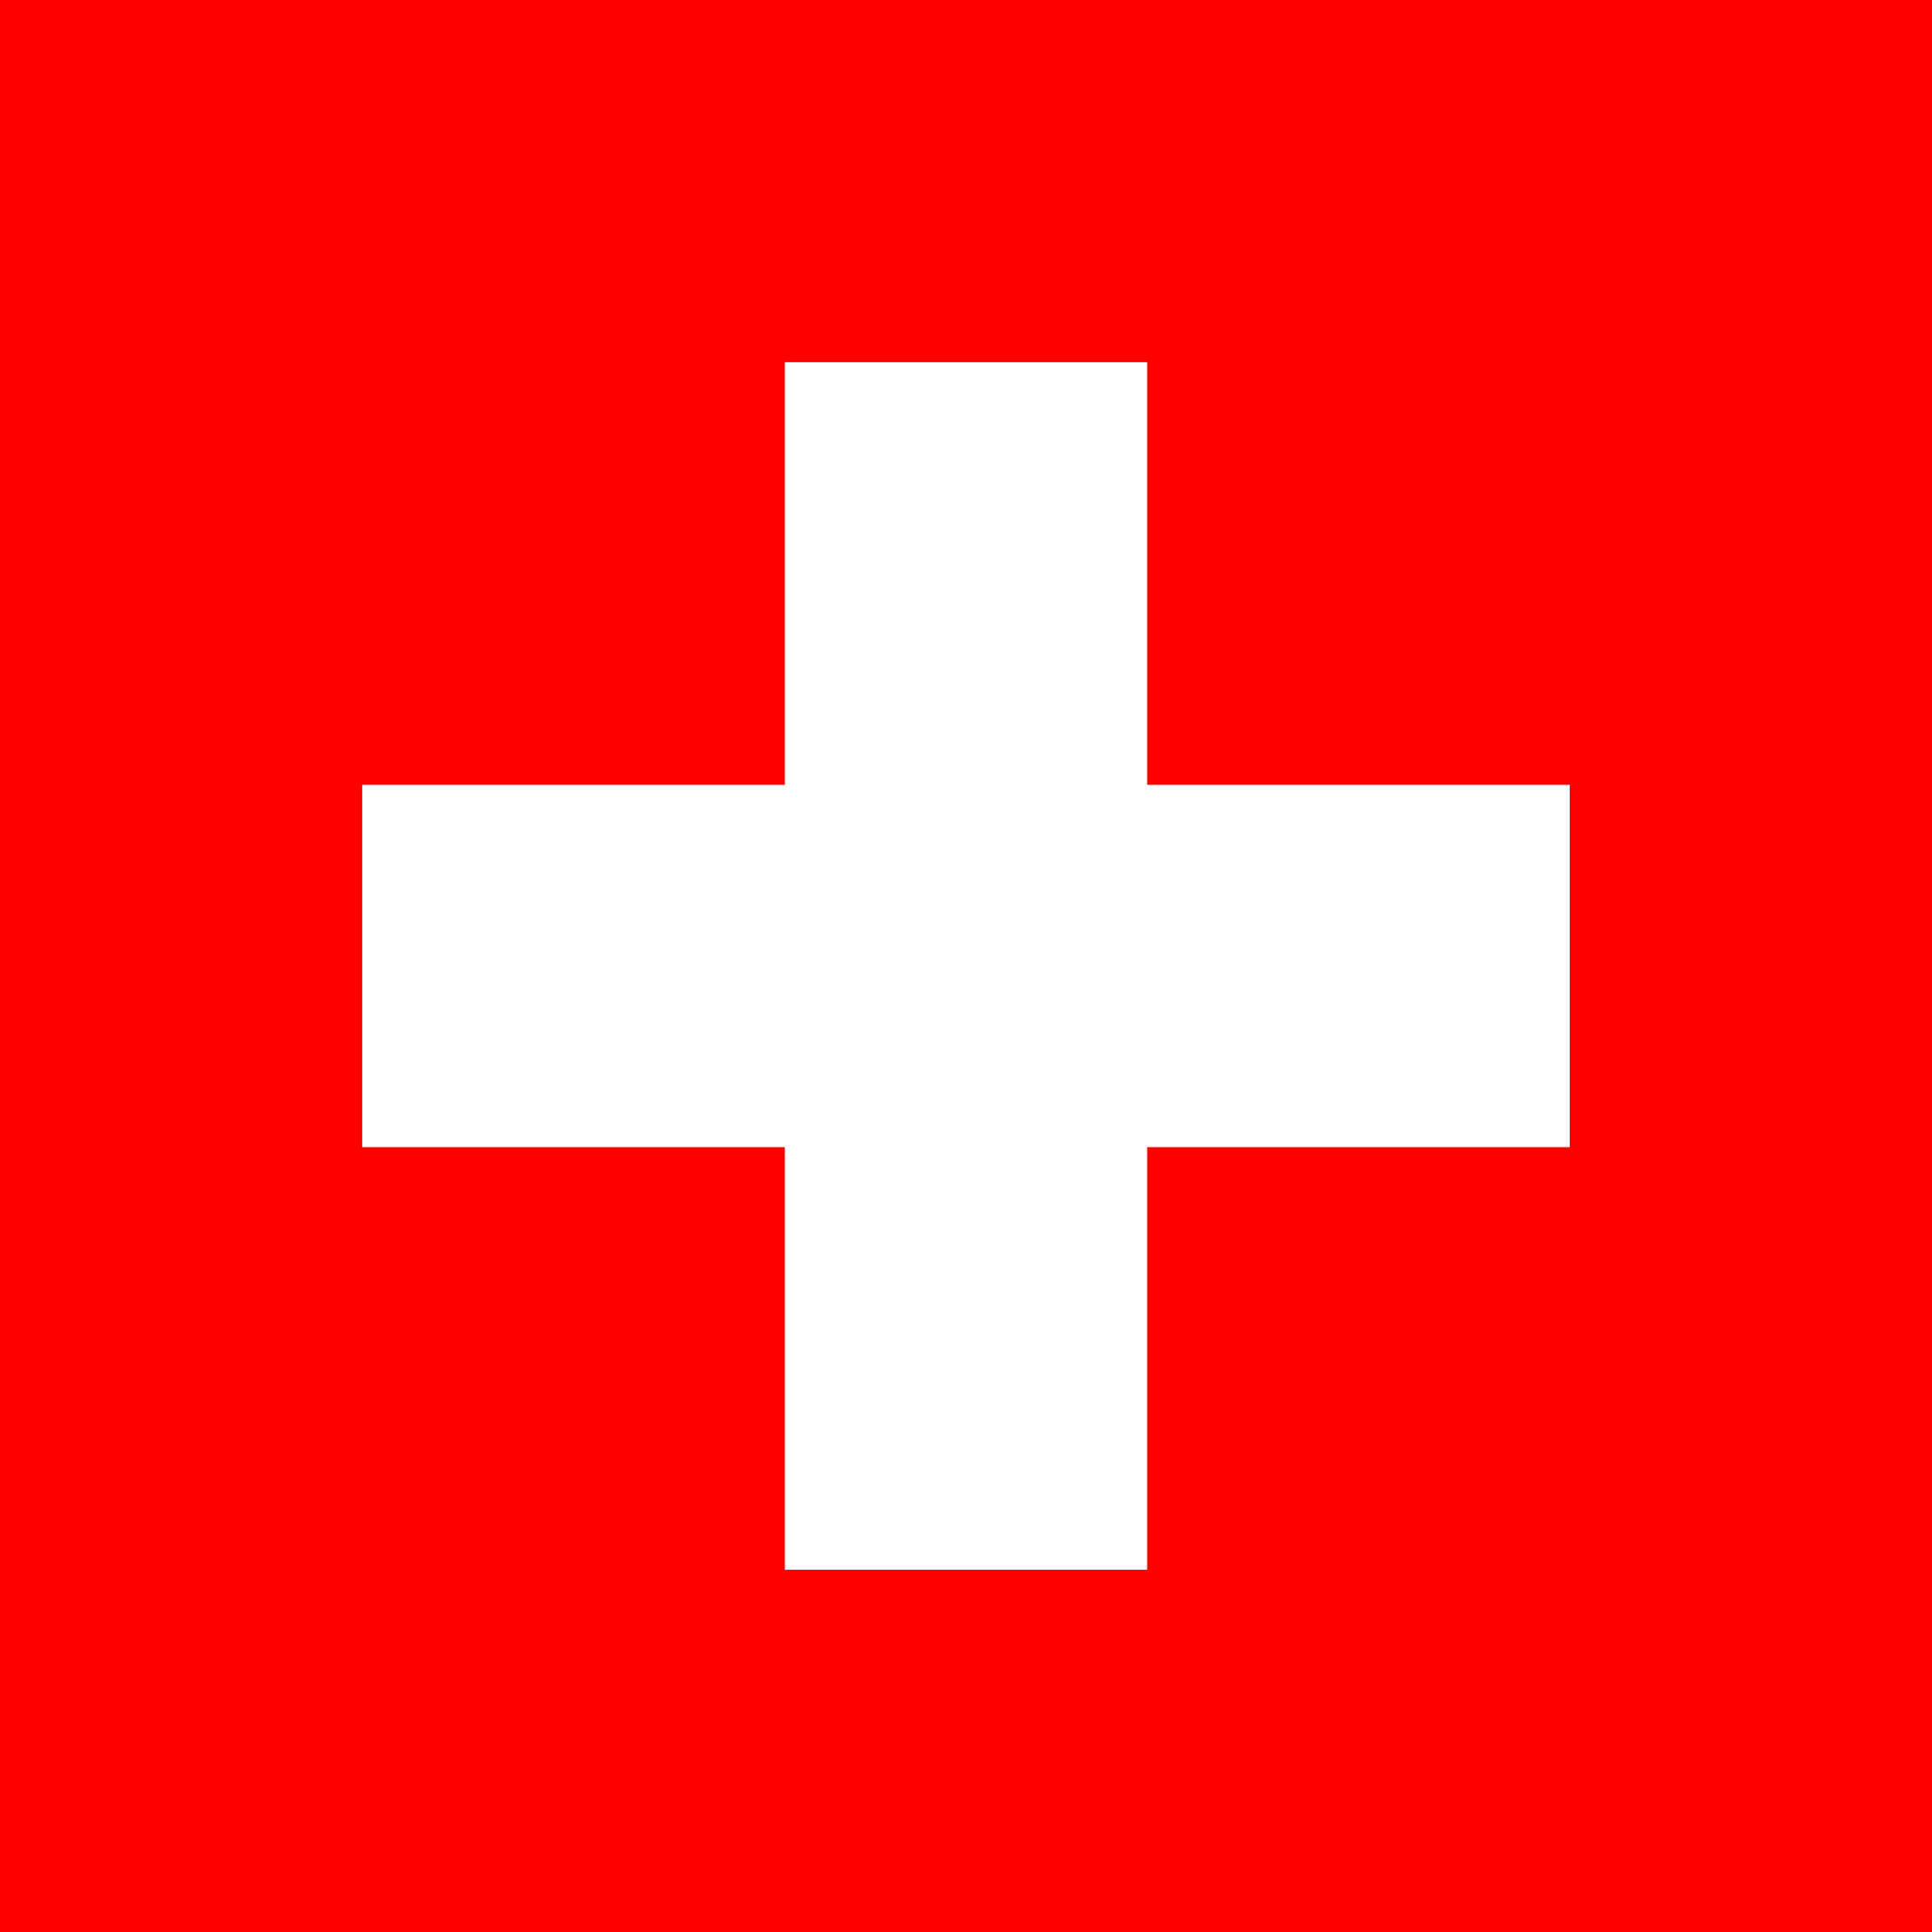 スイス国旗の特徴や意味 由来 誕生年 フリーイラストや画像を徹底的に解説します 世界国旗ポータルサイト ワールドフラッグス